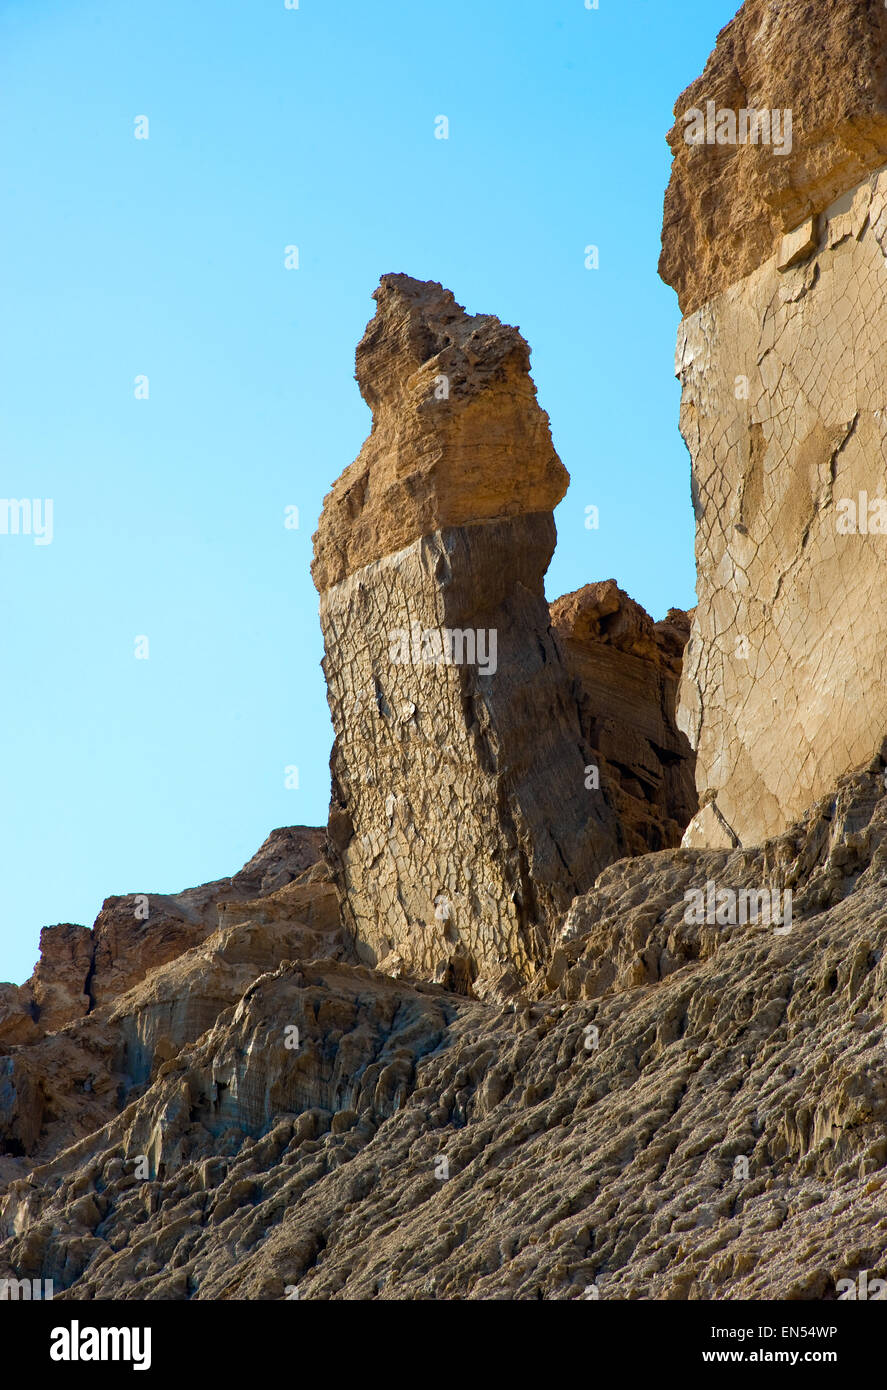 Gran roca cerca de las orillas del mar muerto, que se llama "la mujer de Lot' Foto de stock